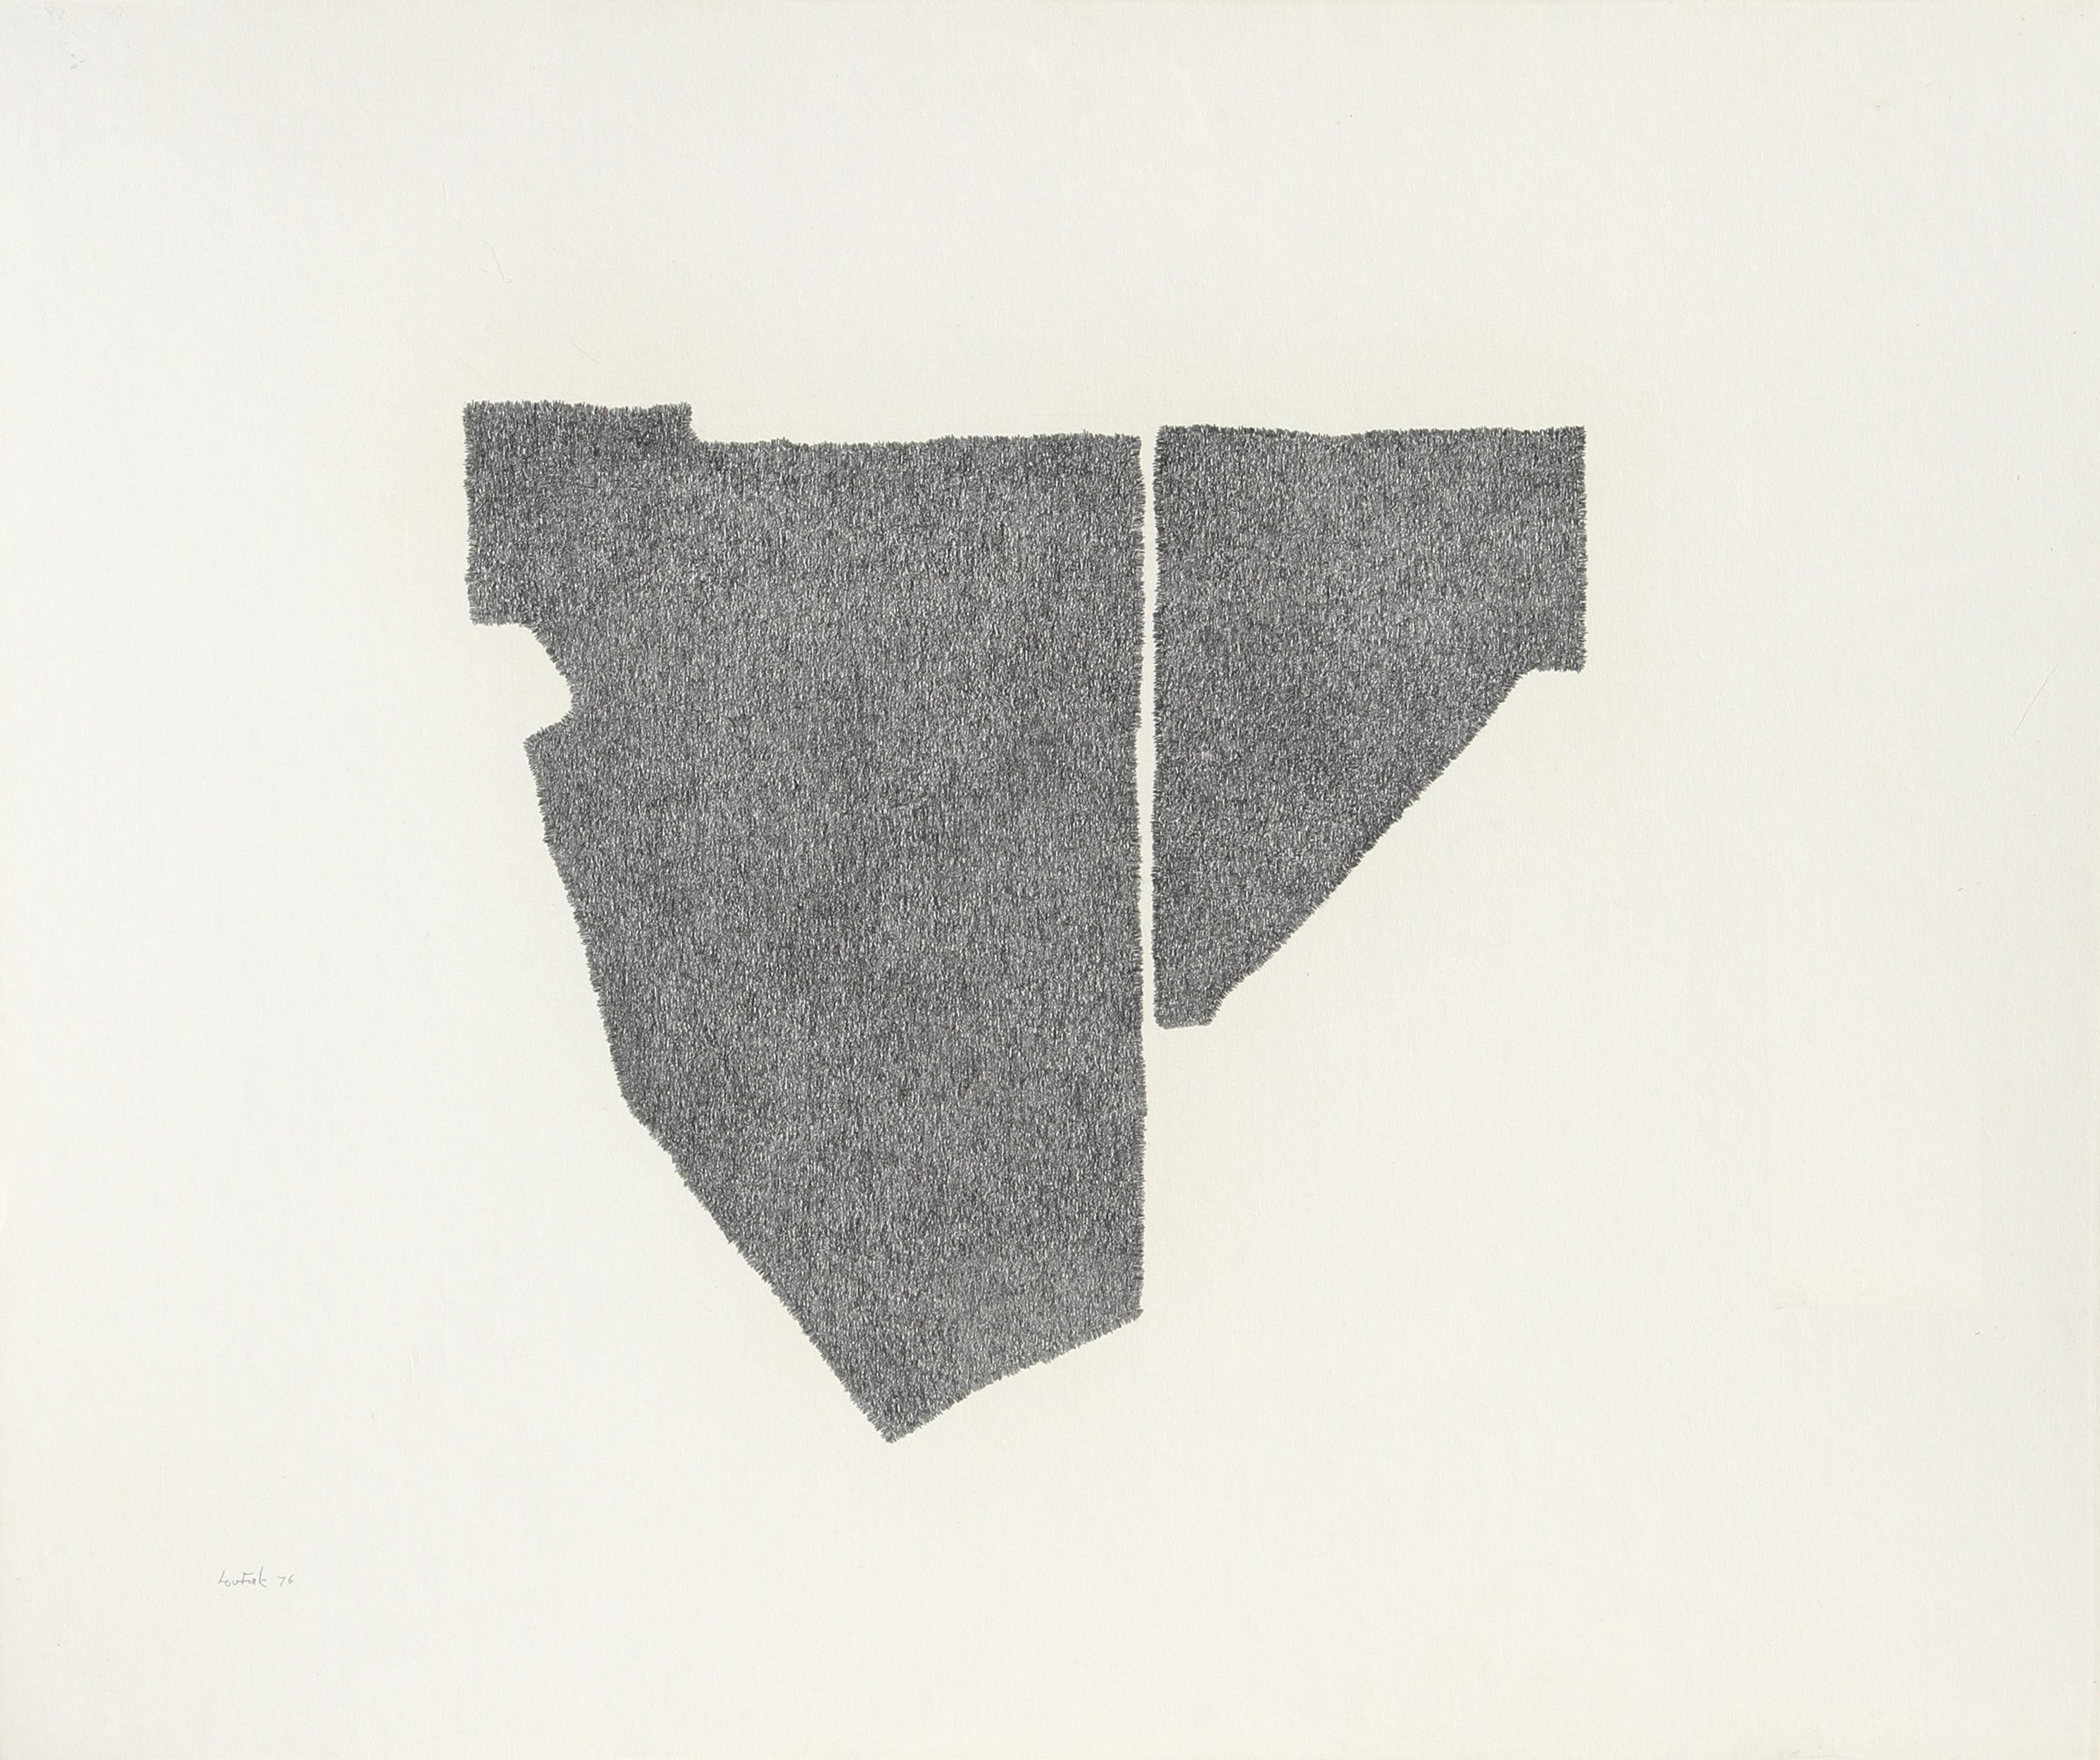 Künstler: Lou Fink
Titel: Holzkante
Jahr: 1976
Medium: Bleistift auf Papier, signiert und datiert v.l.n.r.
Größe: 20 in. x 24 in. (50,8 cm x 60,96 cm)